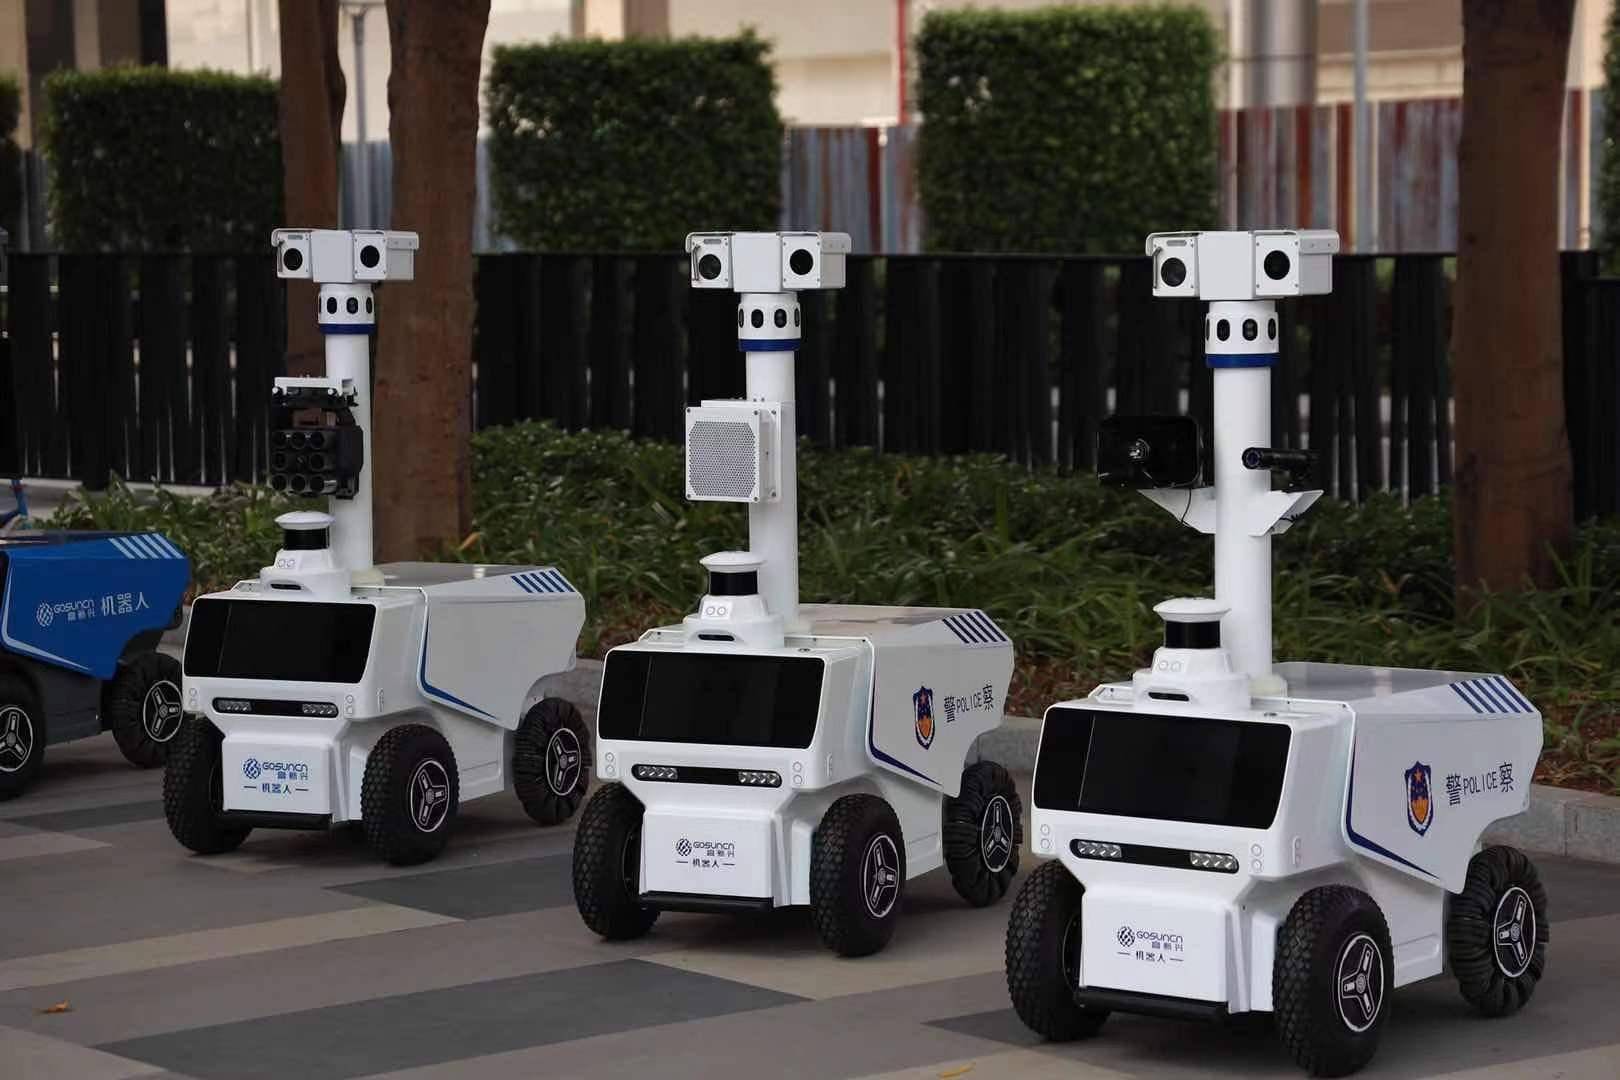 0版本,国内首款机器人交警,国内首款5g测温巡逻机器人等行业标杆产品.